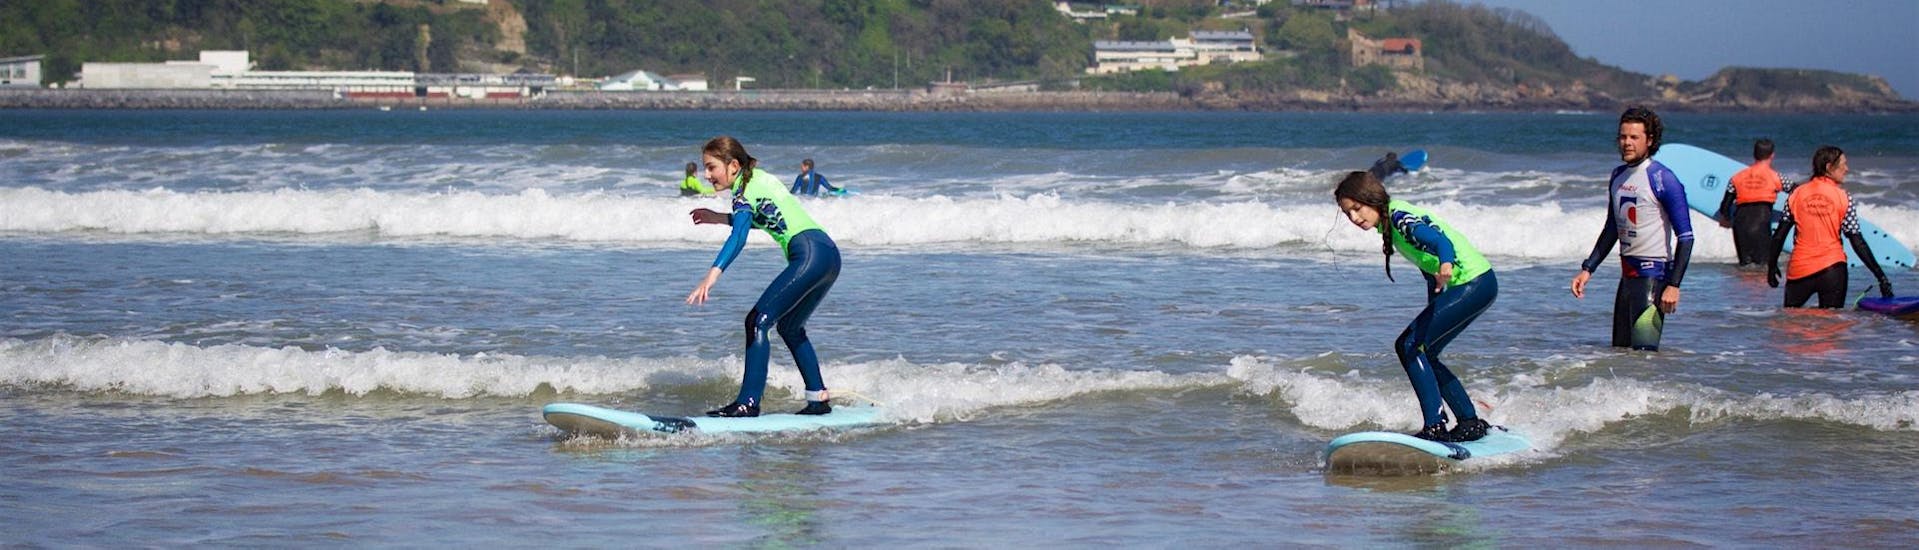 Surflessen in Saint-Jean-de-Luz vanaf 7 jaar voor alle niveaus.